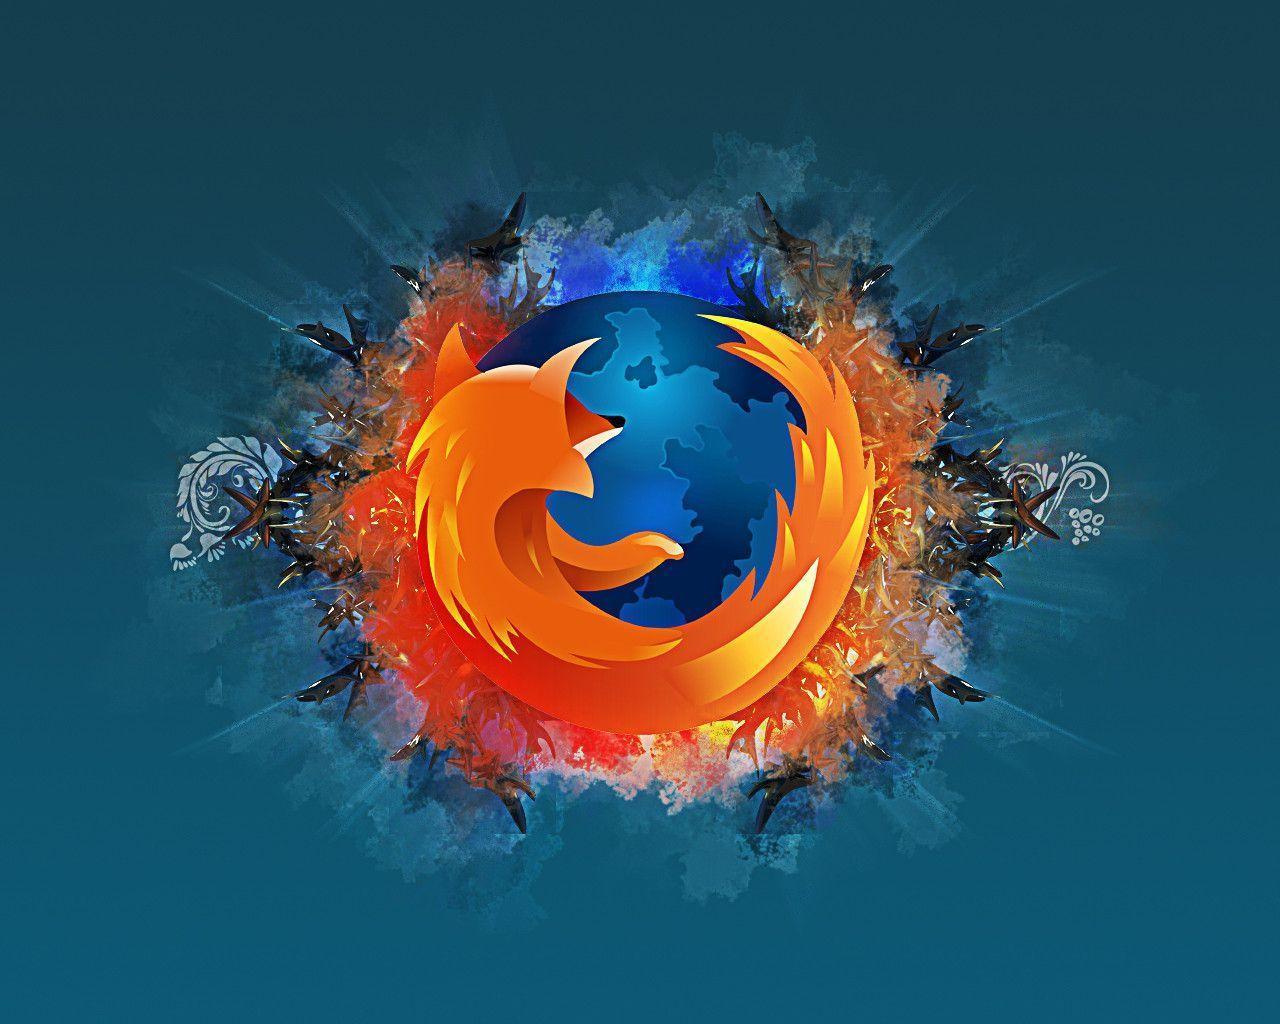 Abstract Firefox Wallpaper